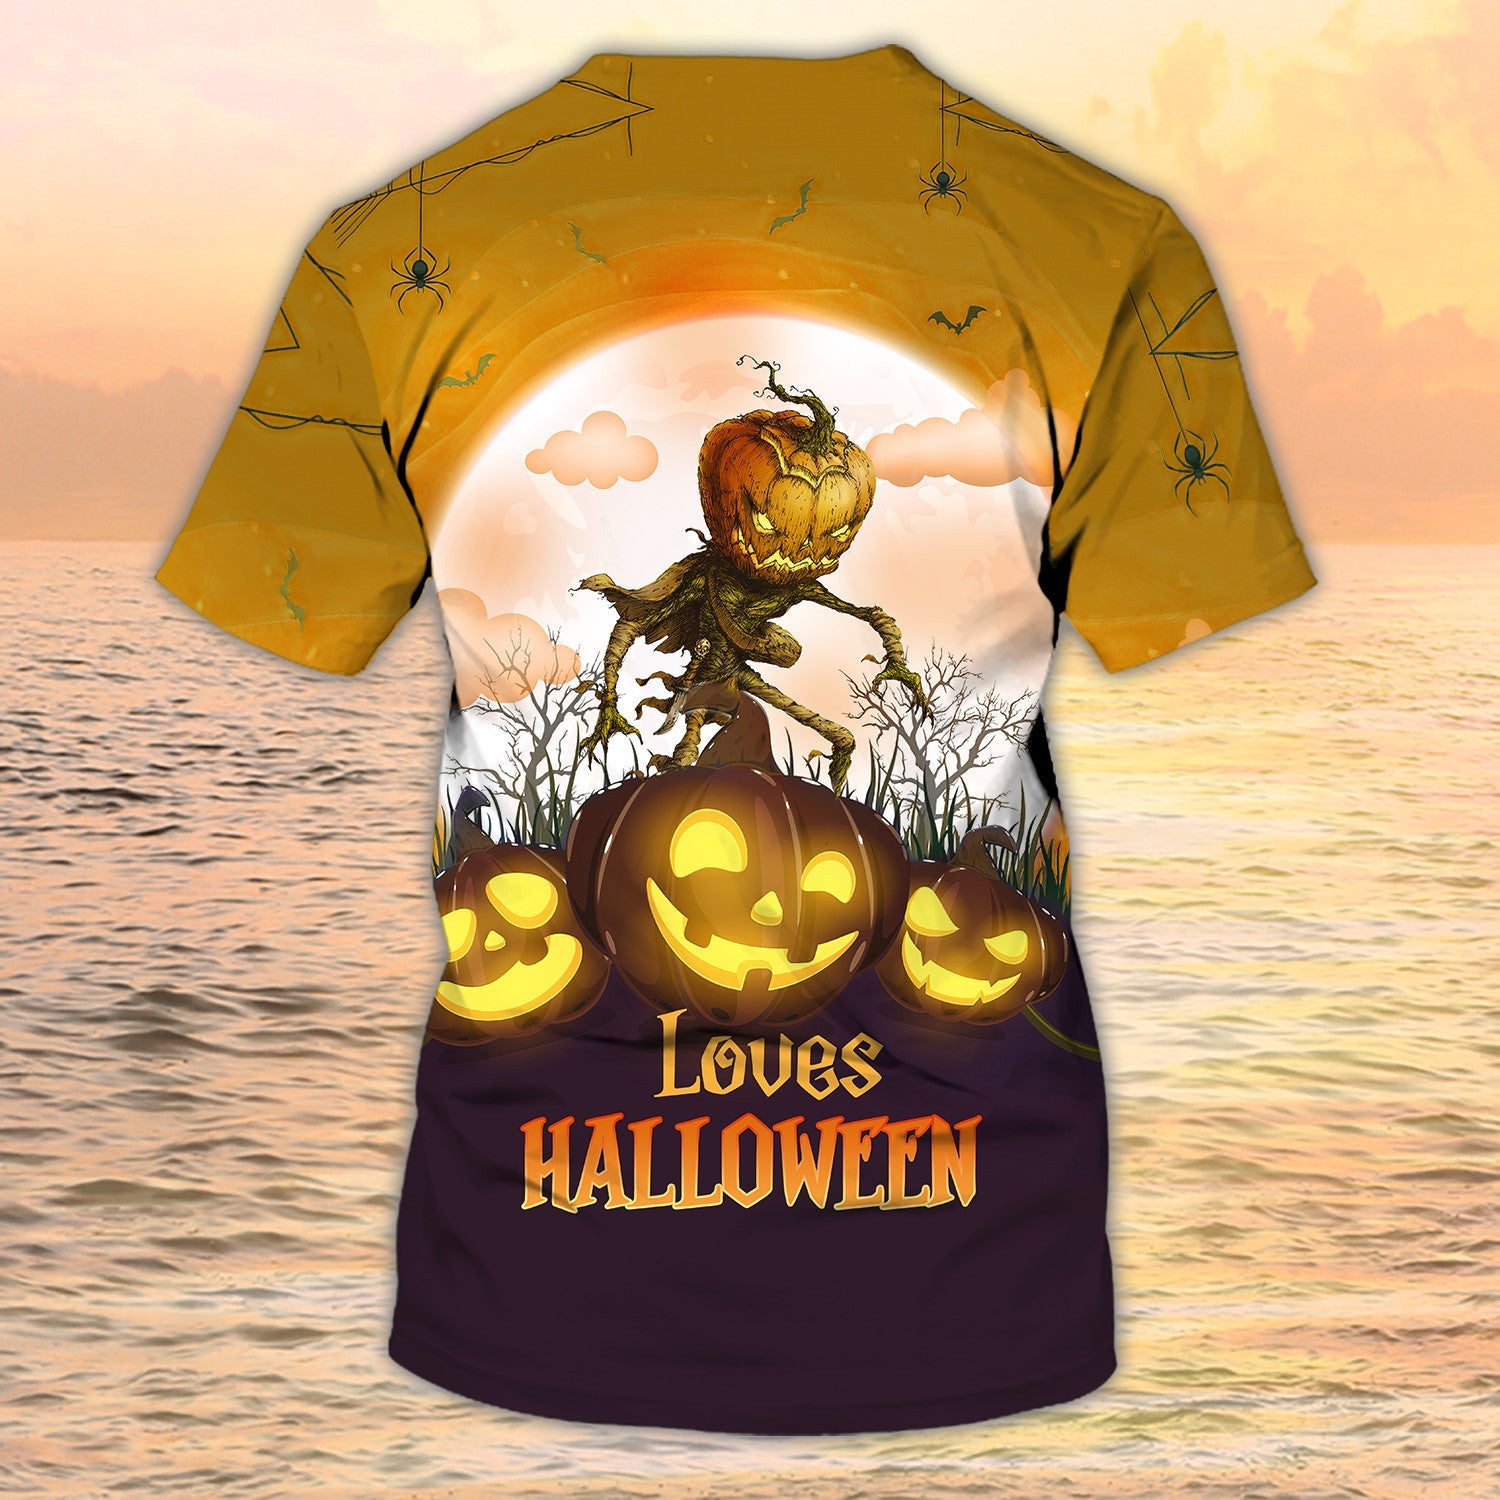 Loves Halloween T Shirt 3D Pumpkin Shirt For Halloween